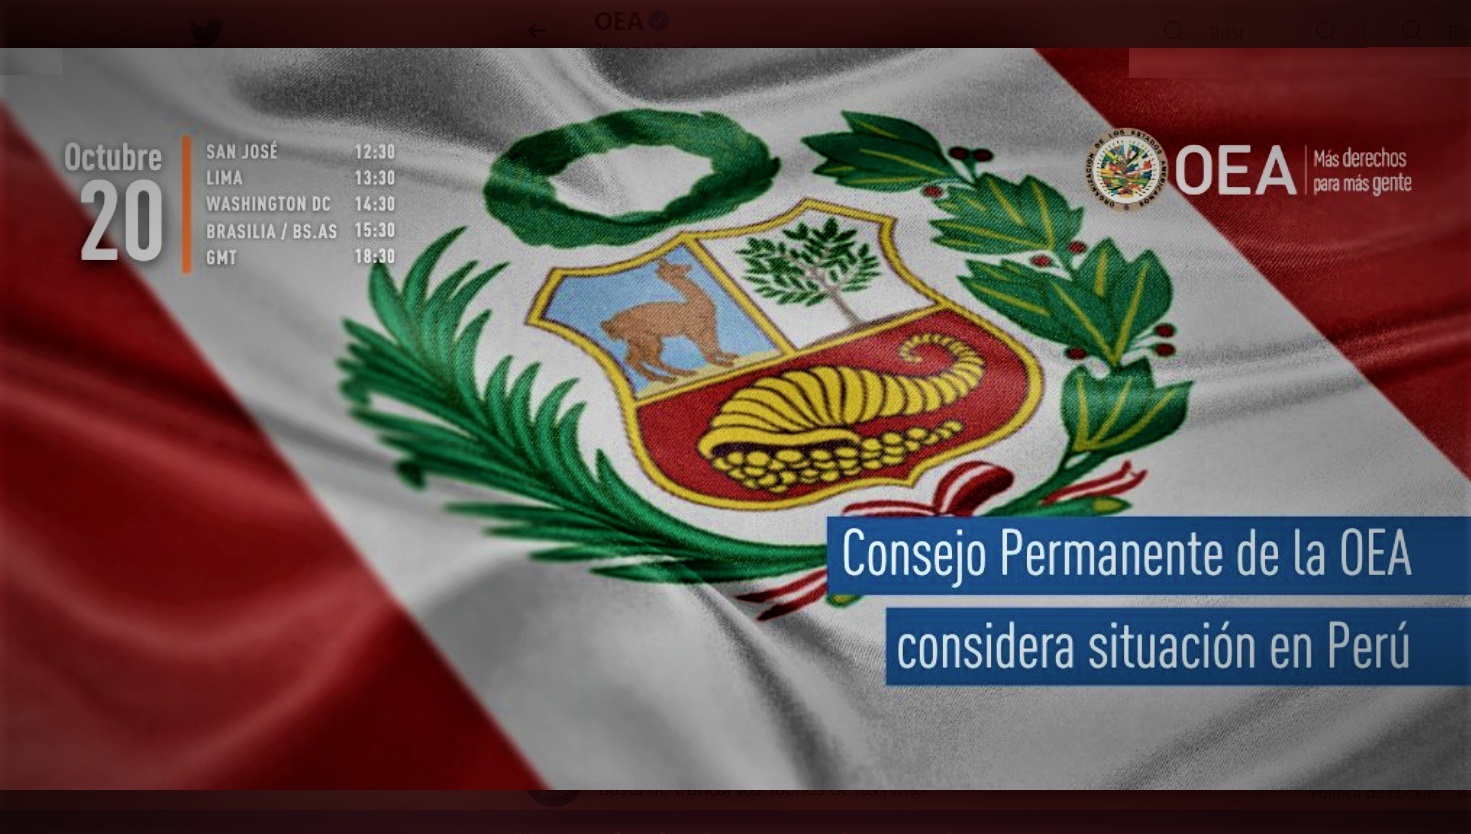 Hoy el Consejo Permanente de la OEA considera situación en Perú.